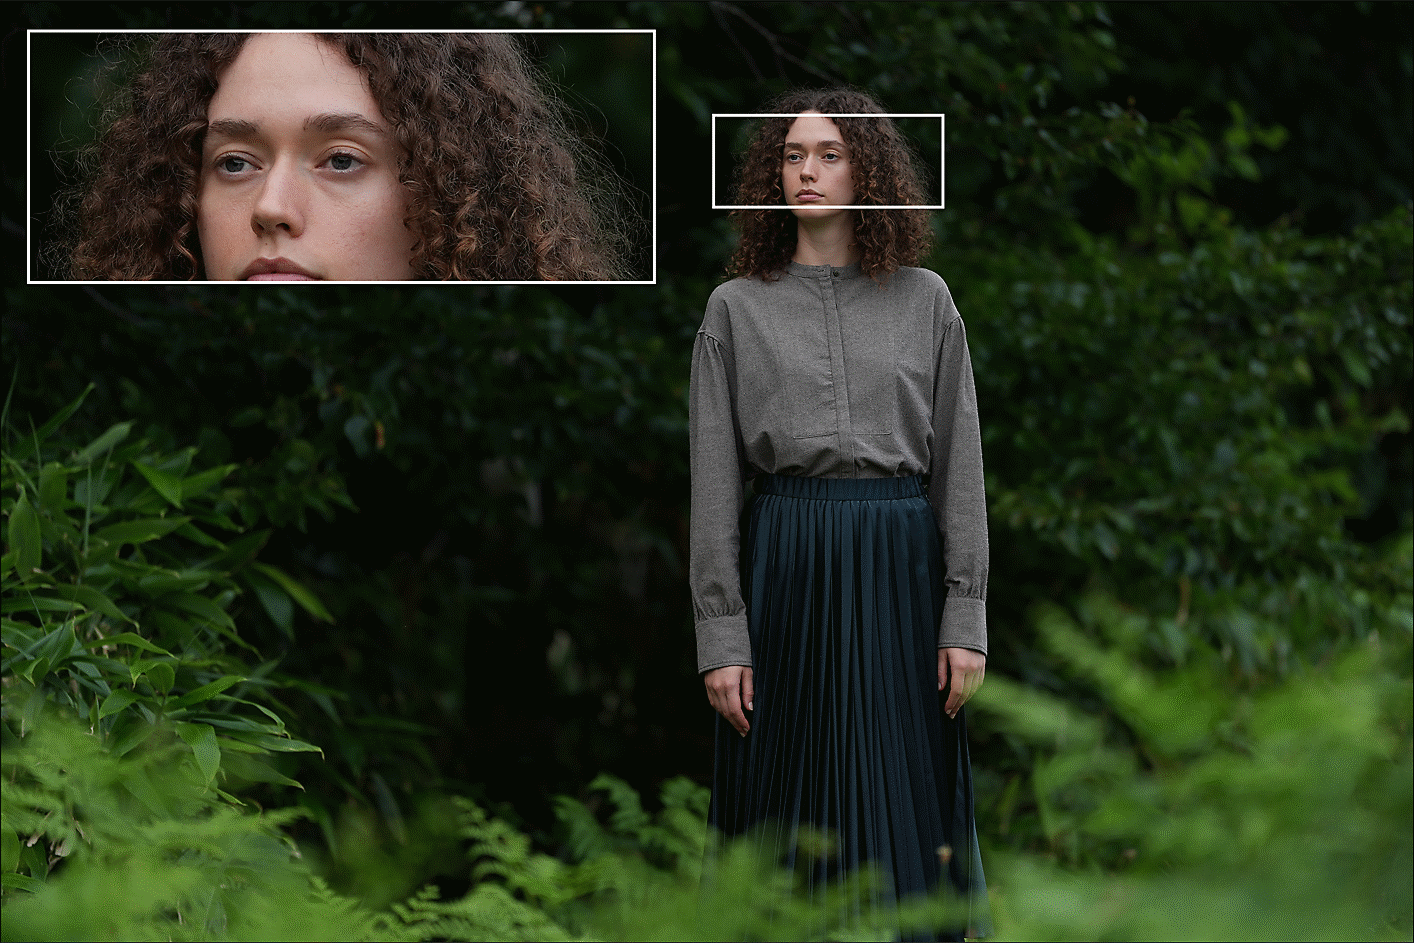 ภาพผู้หญิงคนหนึ่งยืนอยู่ในป่าไม้และภาพใบหน้าของเธอในระยะใกล้